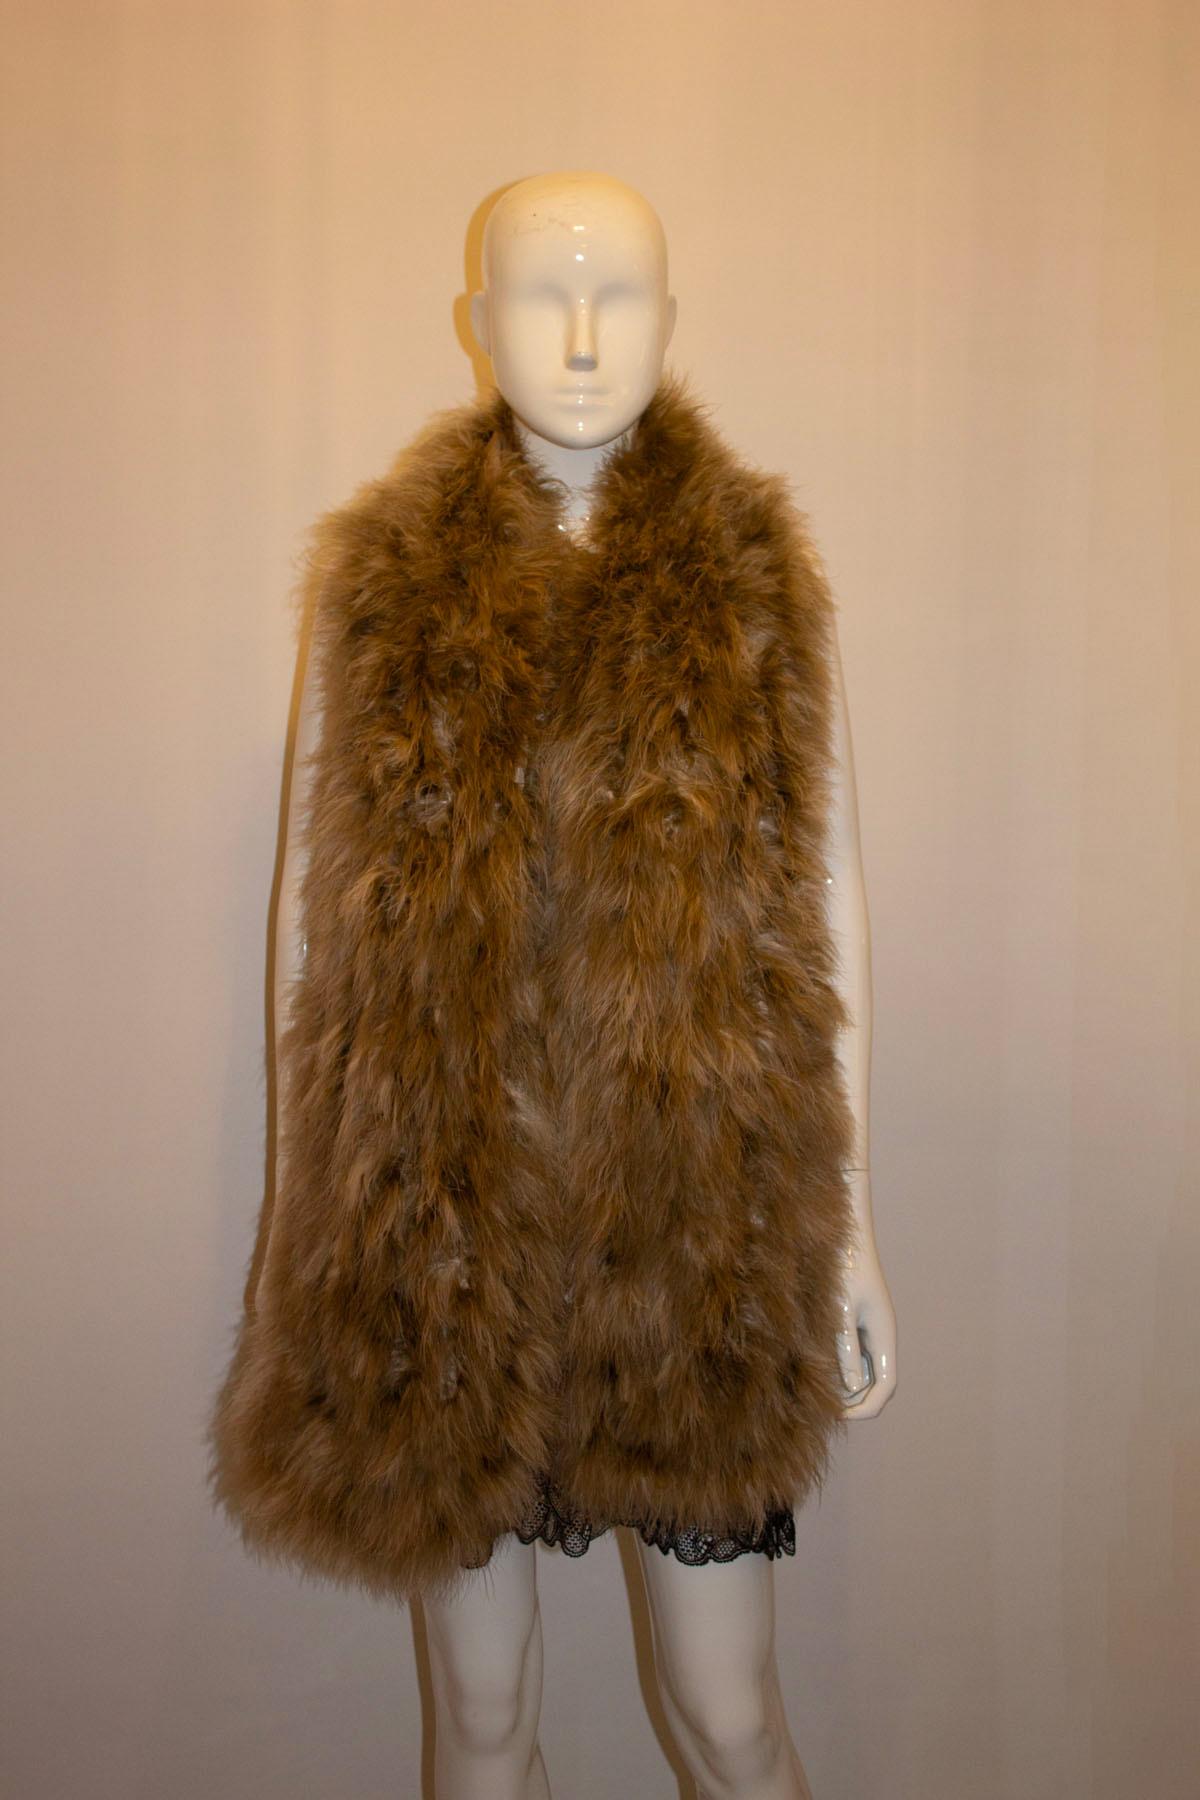 Die Federstola/der Schal von Ralph Lauren , Collection'S, ist eine tolle Ergänzung für jede Garderobe. 
Der Schal ist in einem weichen Braun gehalten, mit Seide gefüttert und in Frankreich hergestellt.
Maße: Länge 75'', Breite 10''.